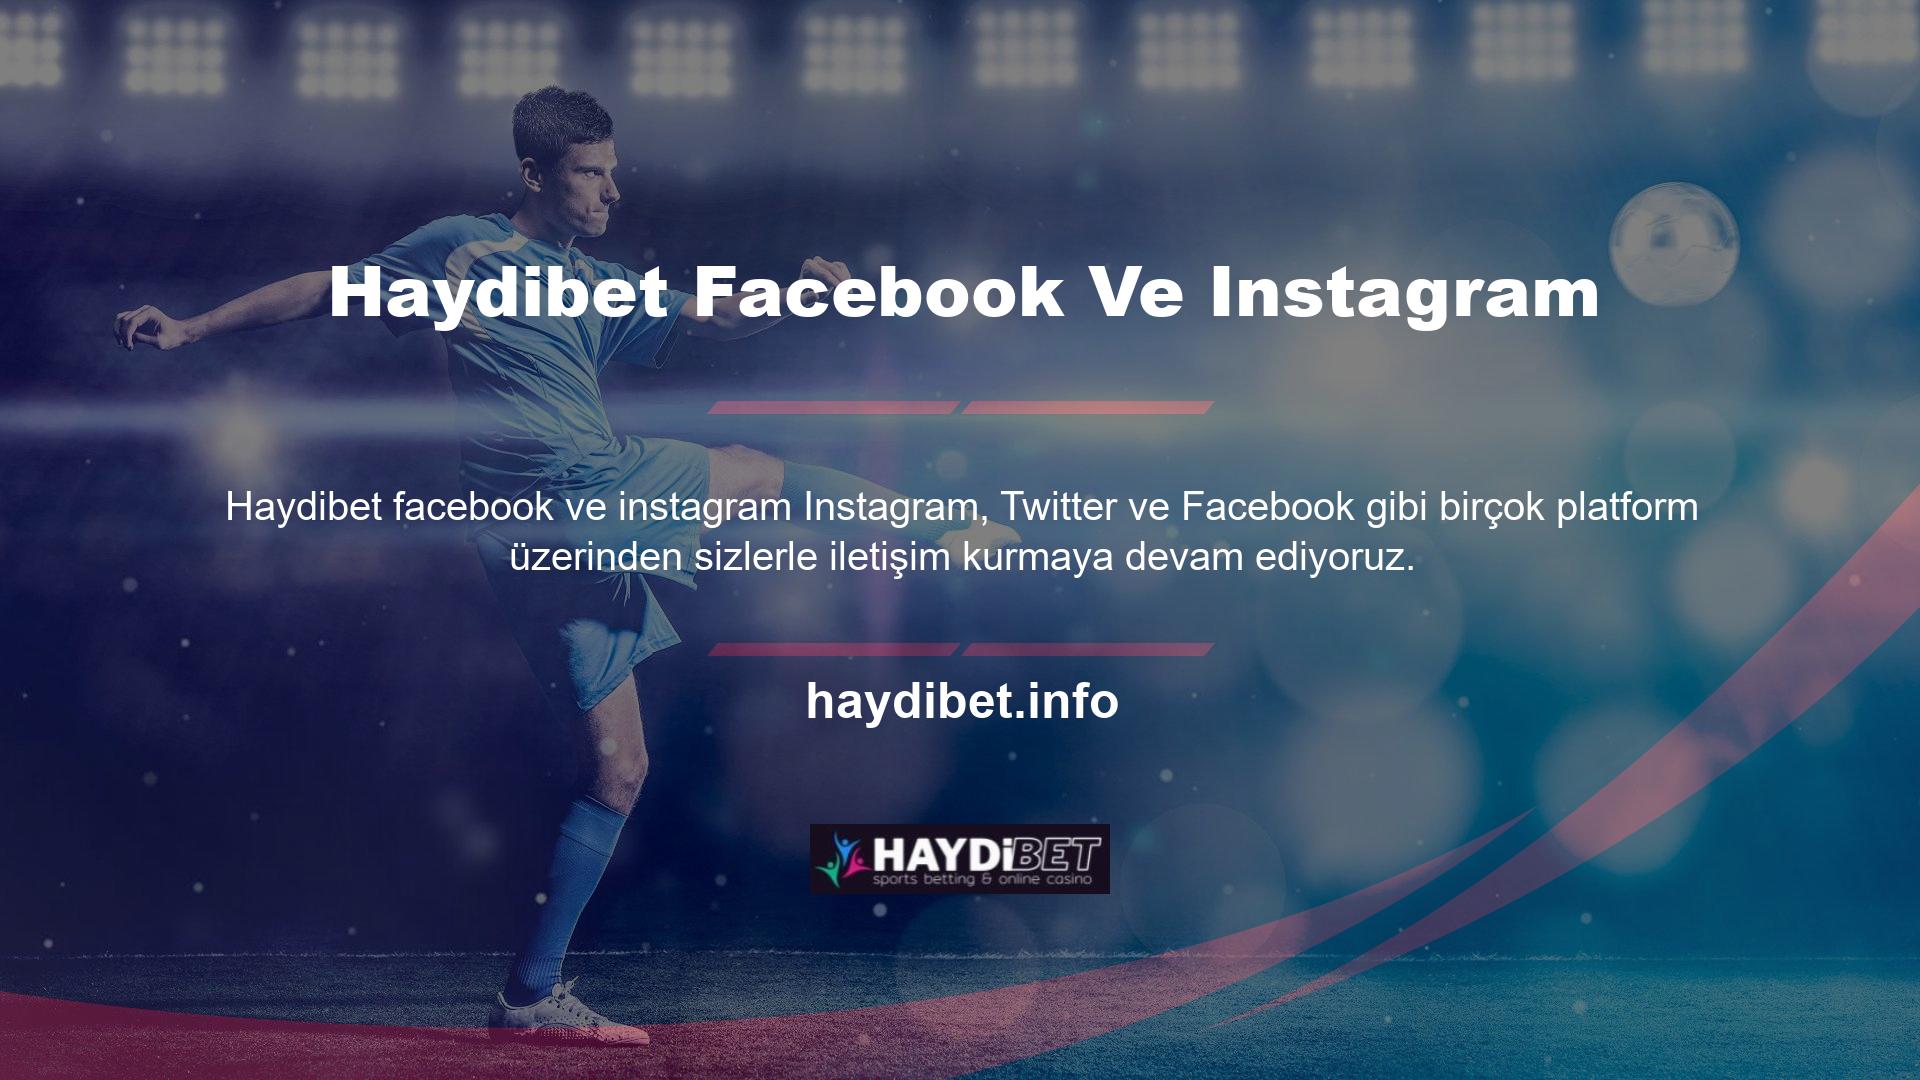 Haydibet Facebook Ve Instagram